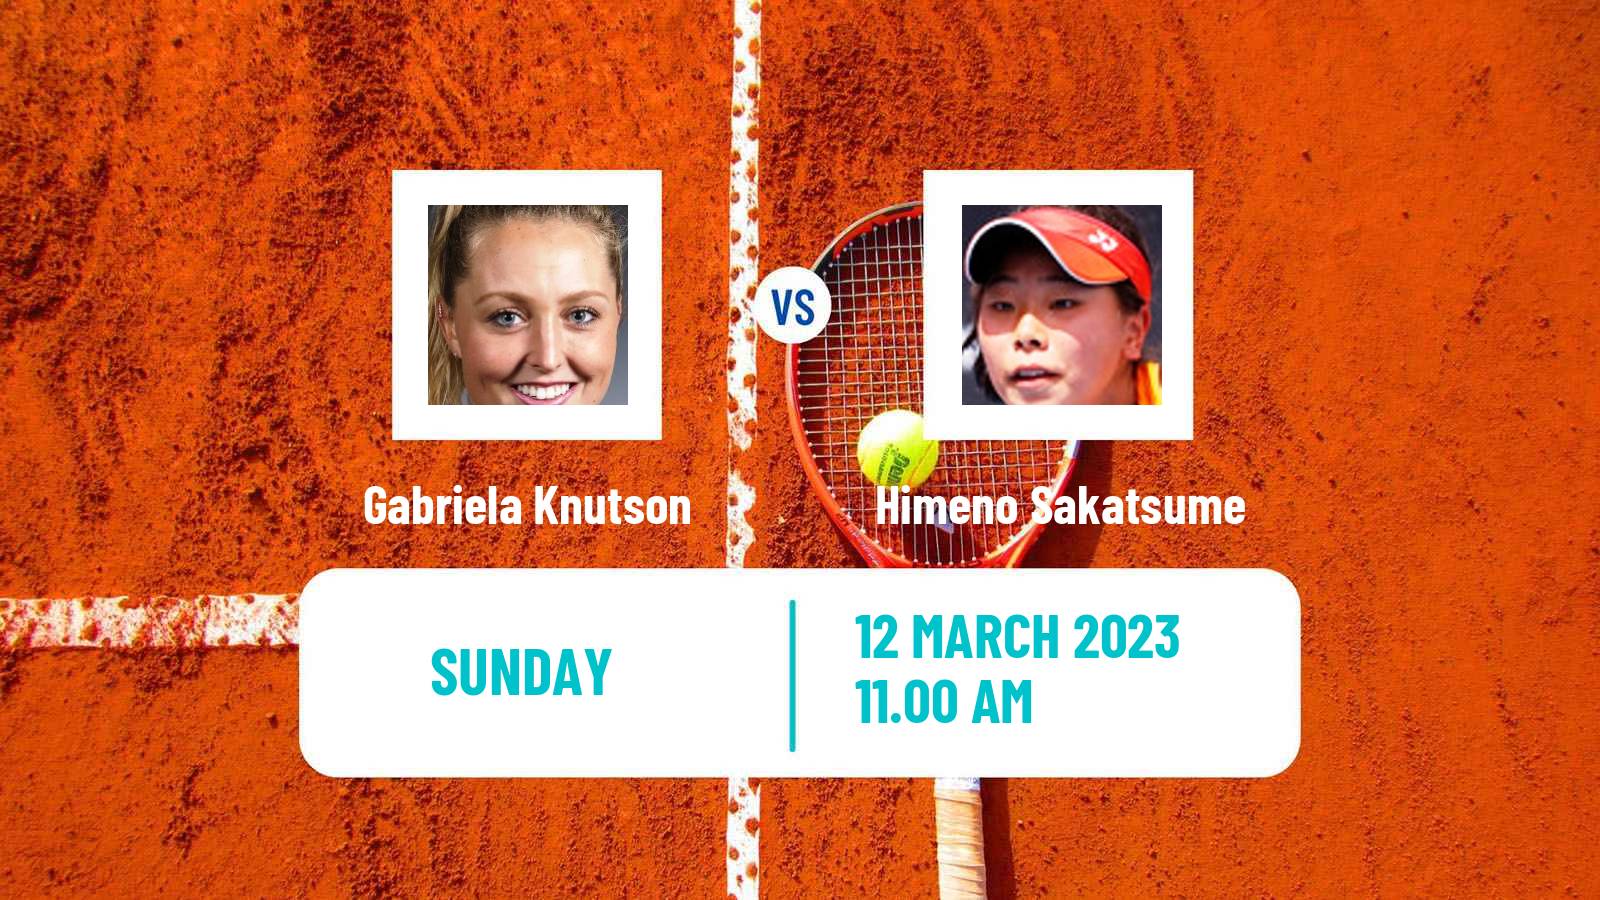 Tennis ITF Tournaments Gabriela Knutson - Himeno Sakatsume